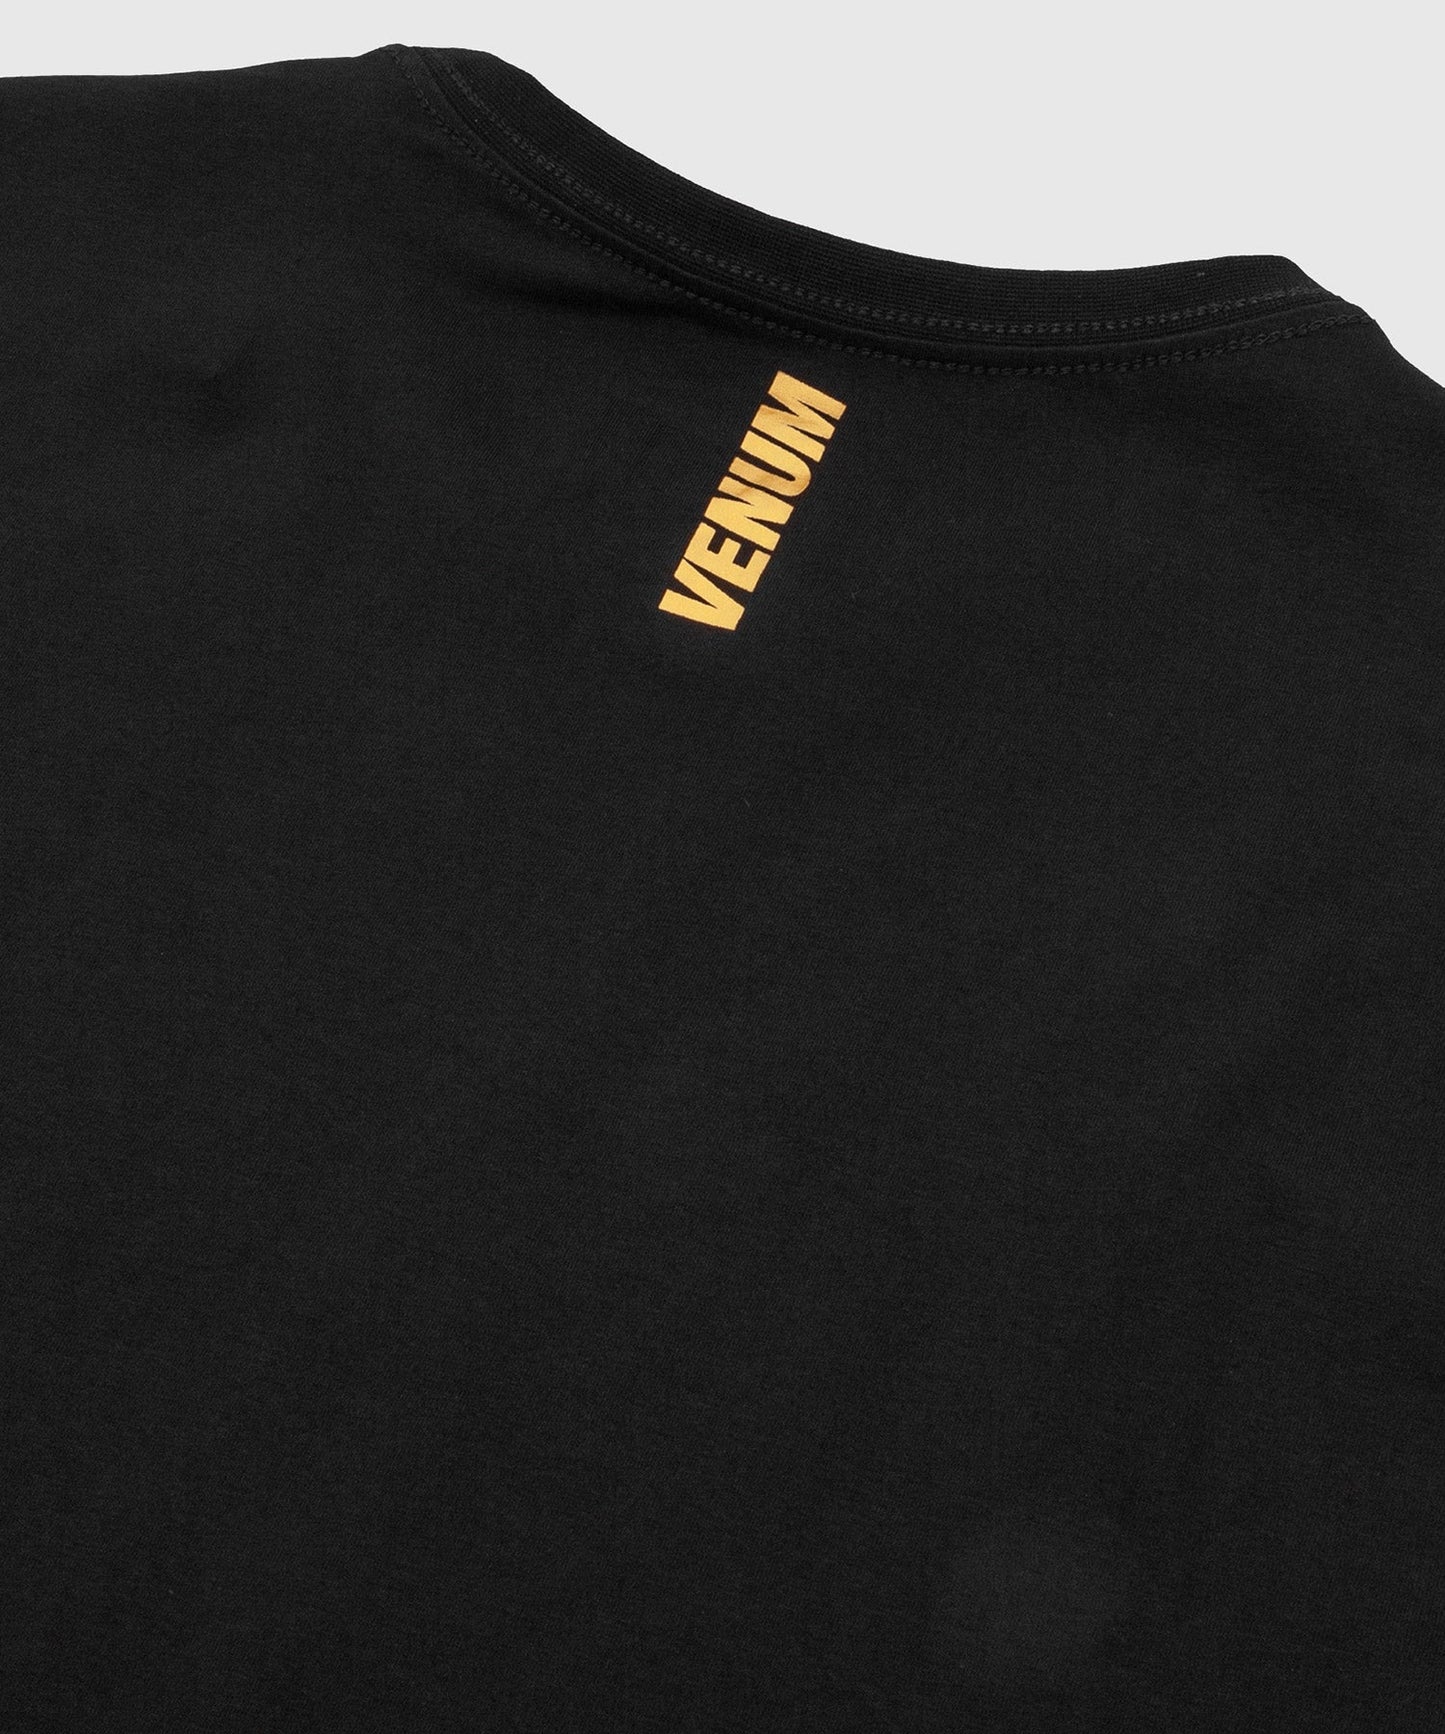 Venum MMA VT T-shirt - Black/Gold